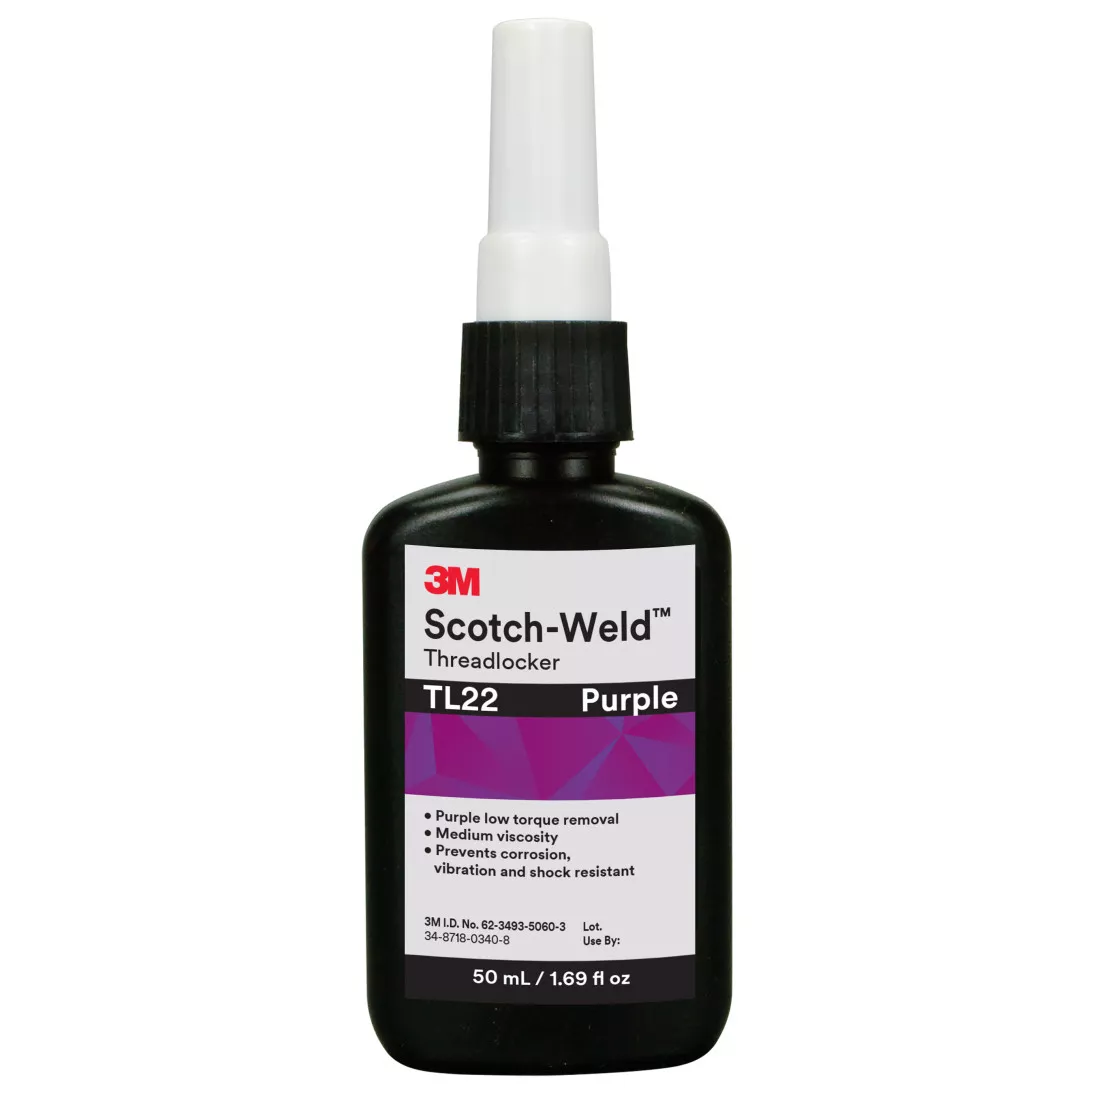 3M™ Scotch-Weld™ Threadlocker TL22, Purple, 50 mL Bottle, 10/case